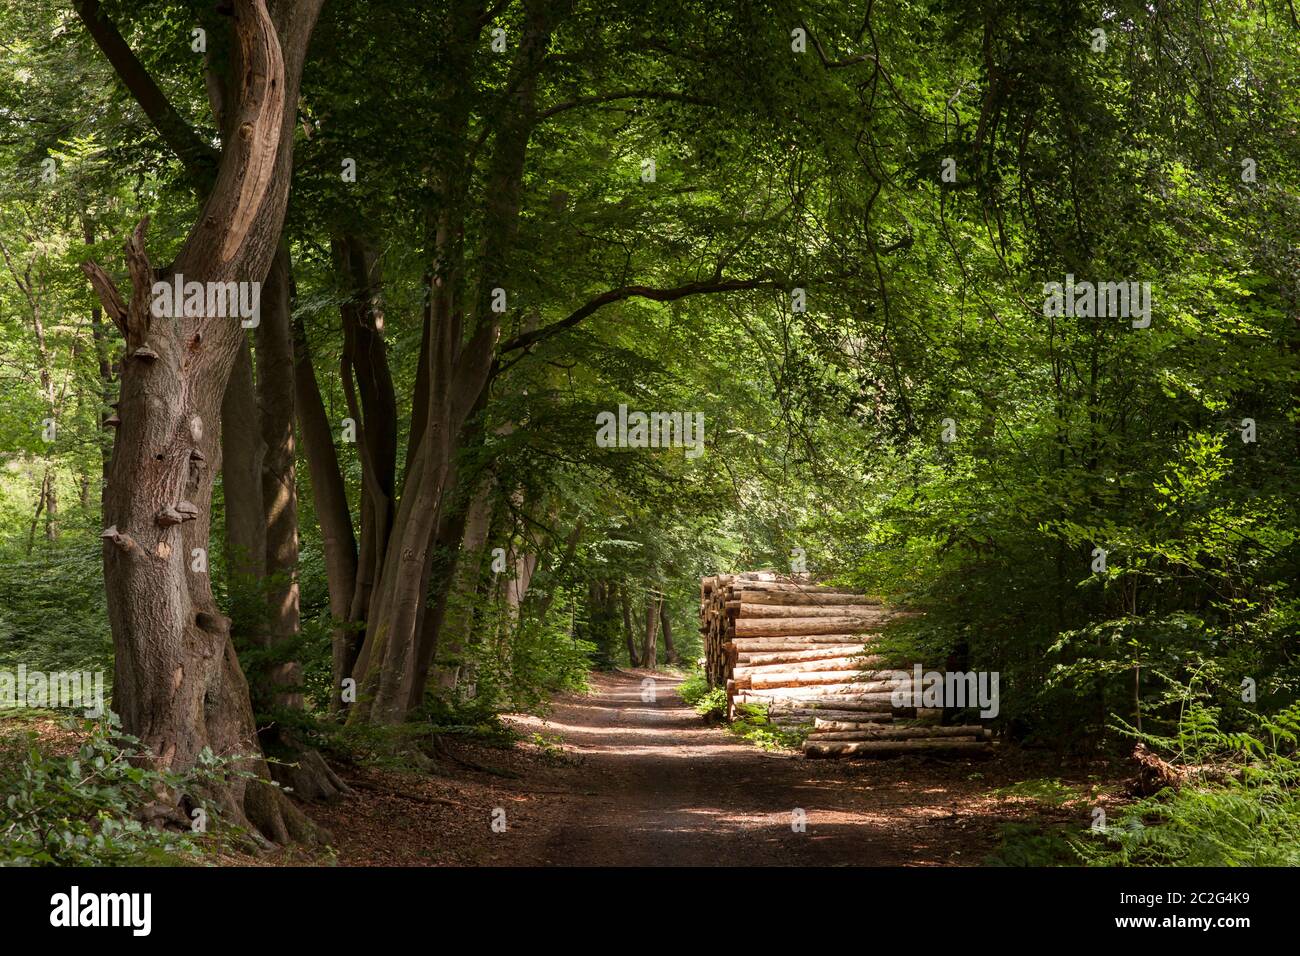 Arbres abattus, troncs d'arbres, dans une forêt près de Haltern dans le district de Recklinghausen, Rhénanie-du-Nord-Westphalie, Allemagne. Gefaellte Bauaume, Baumstaemme, i Banque D'Images